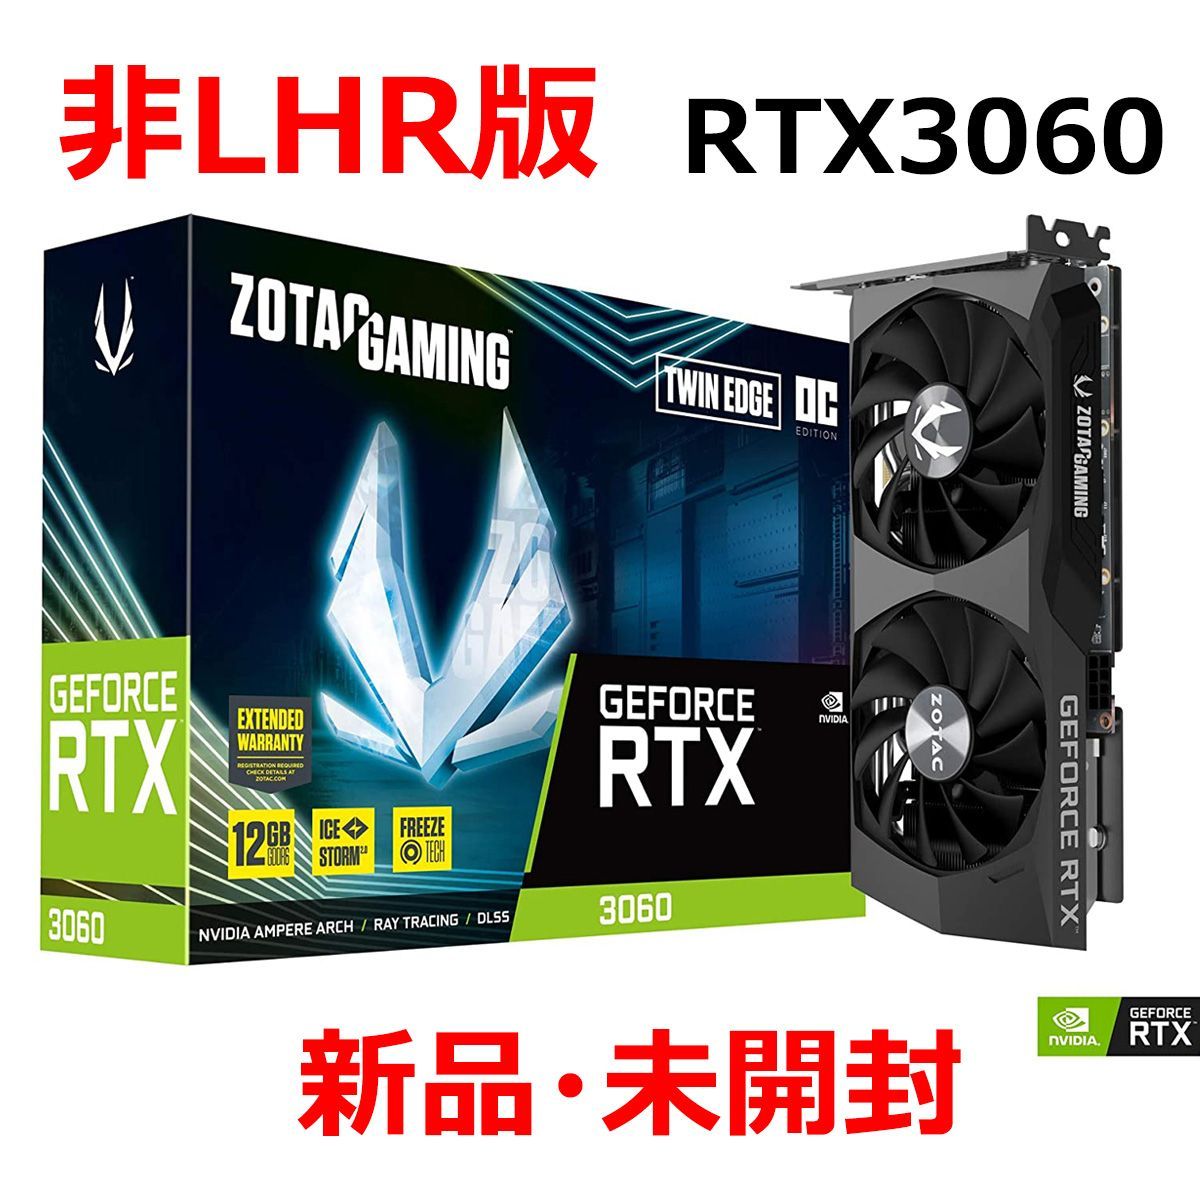 新品未開封ZOTAC GAMING GeForce RTX 3060